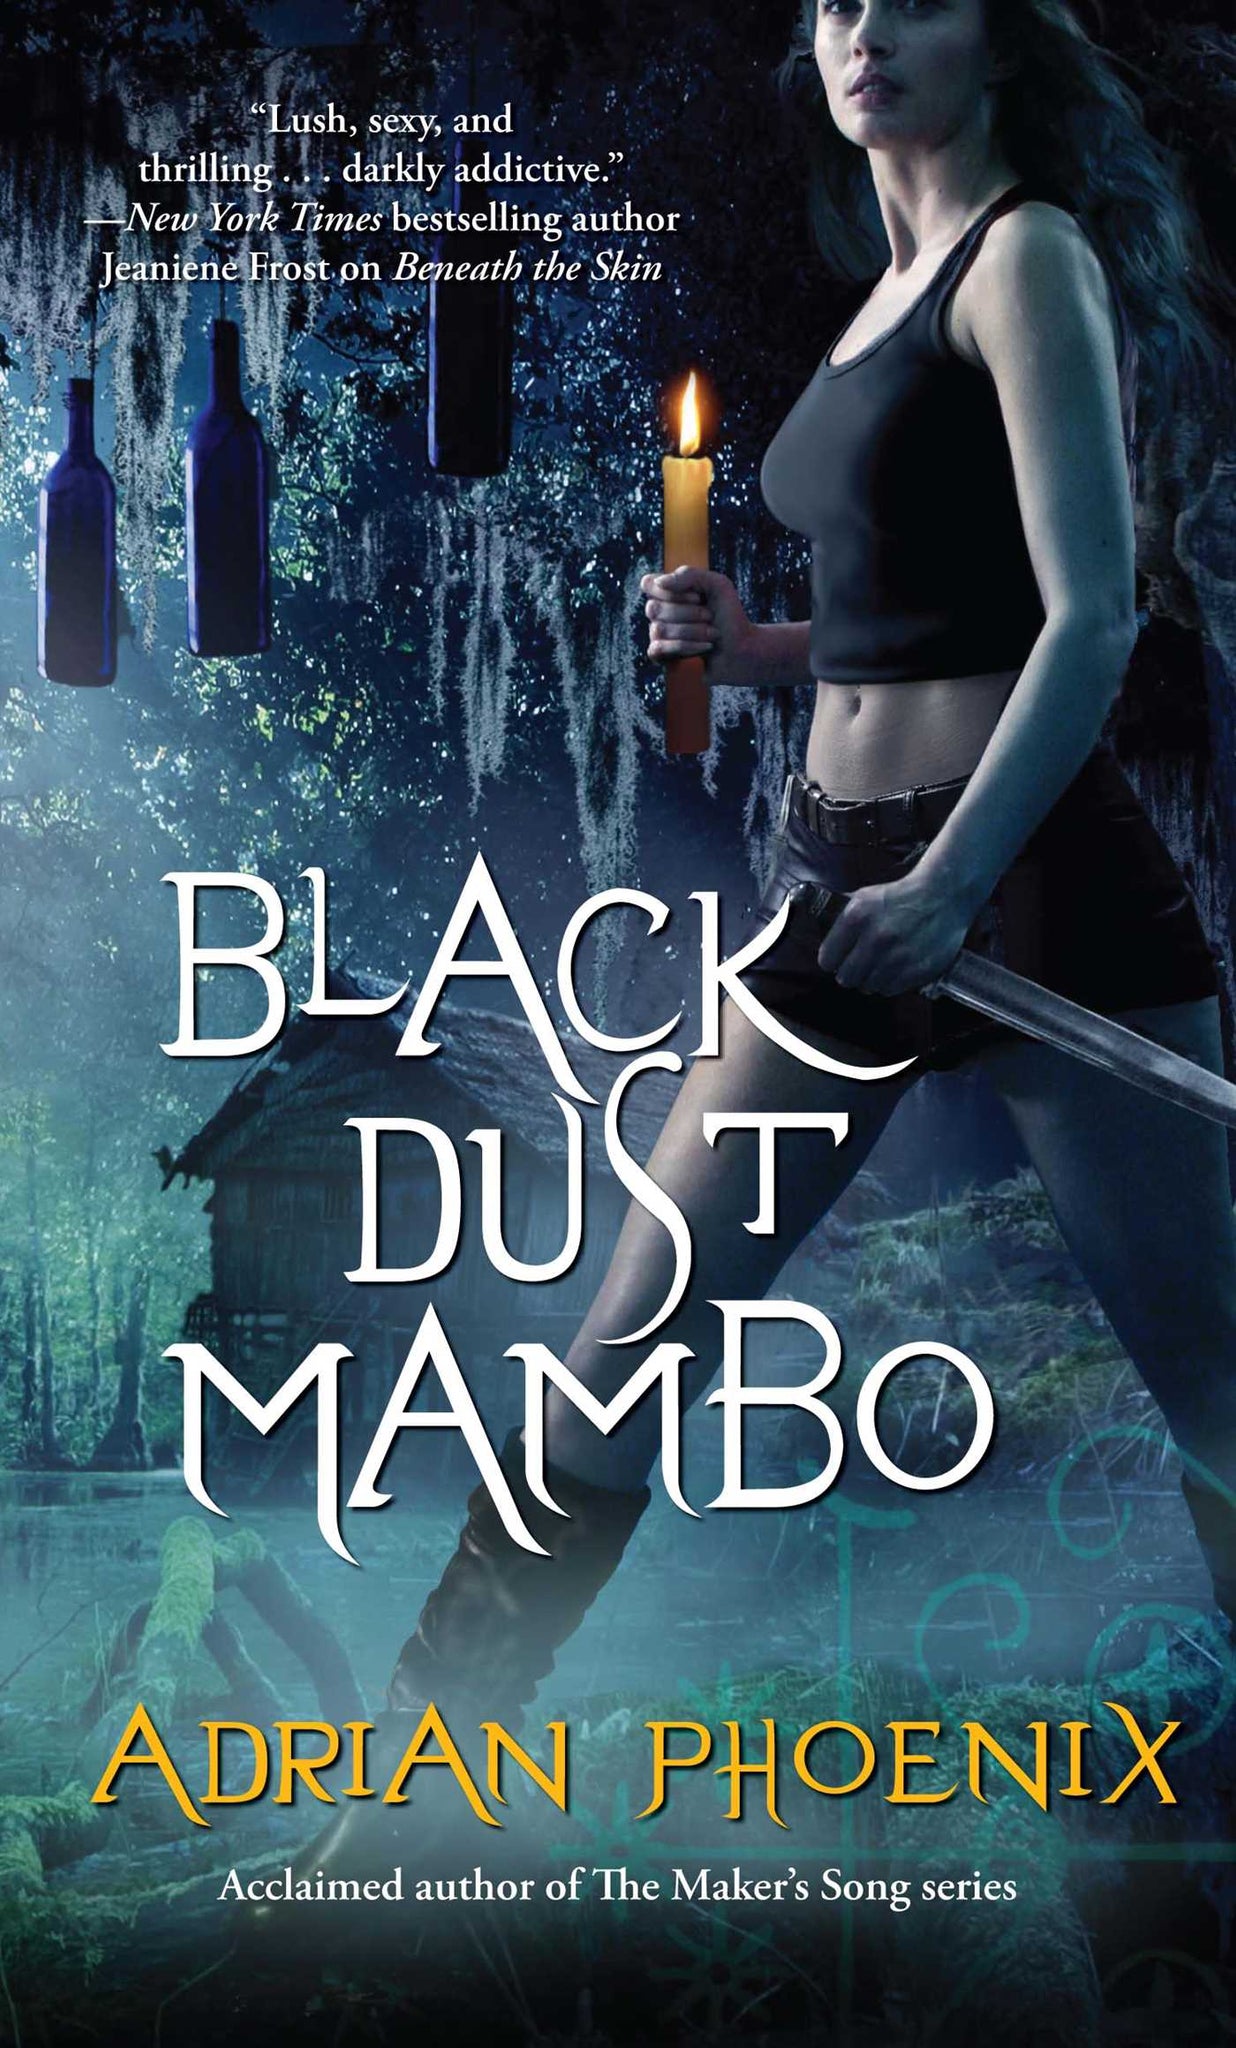 Black Dust Mambo